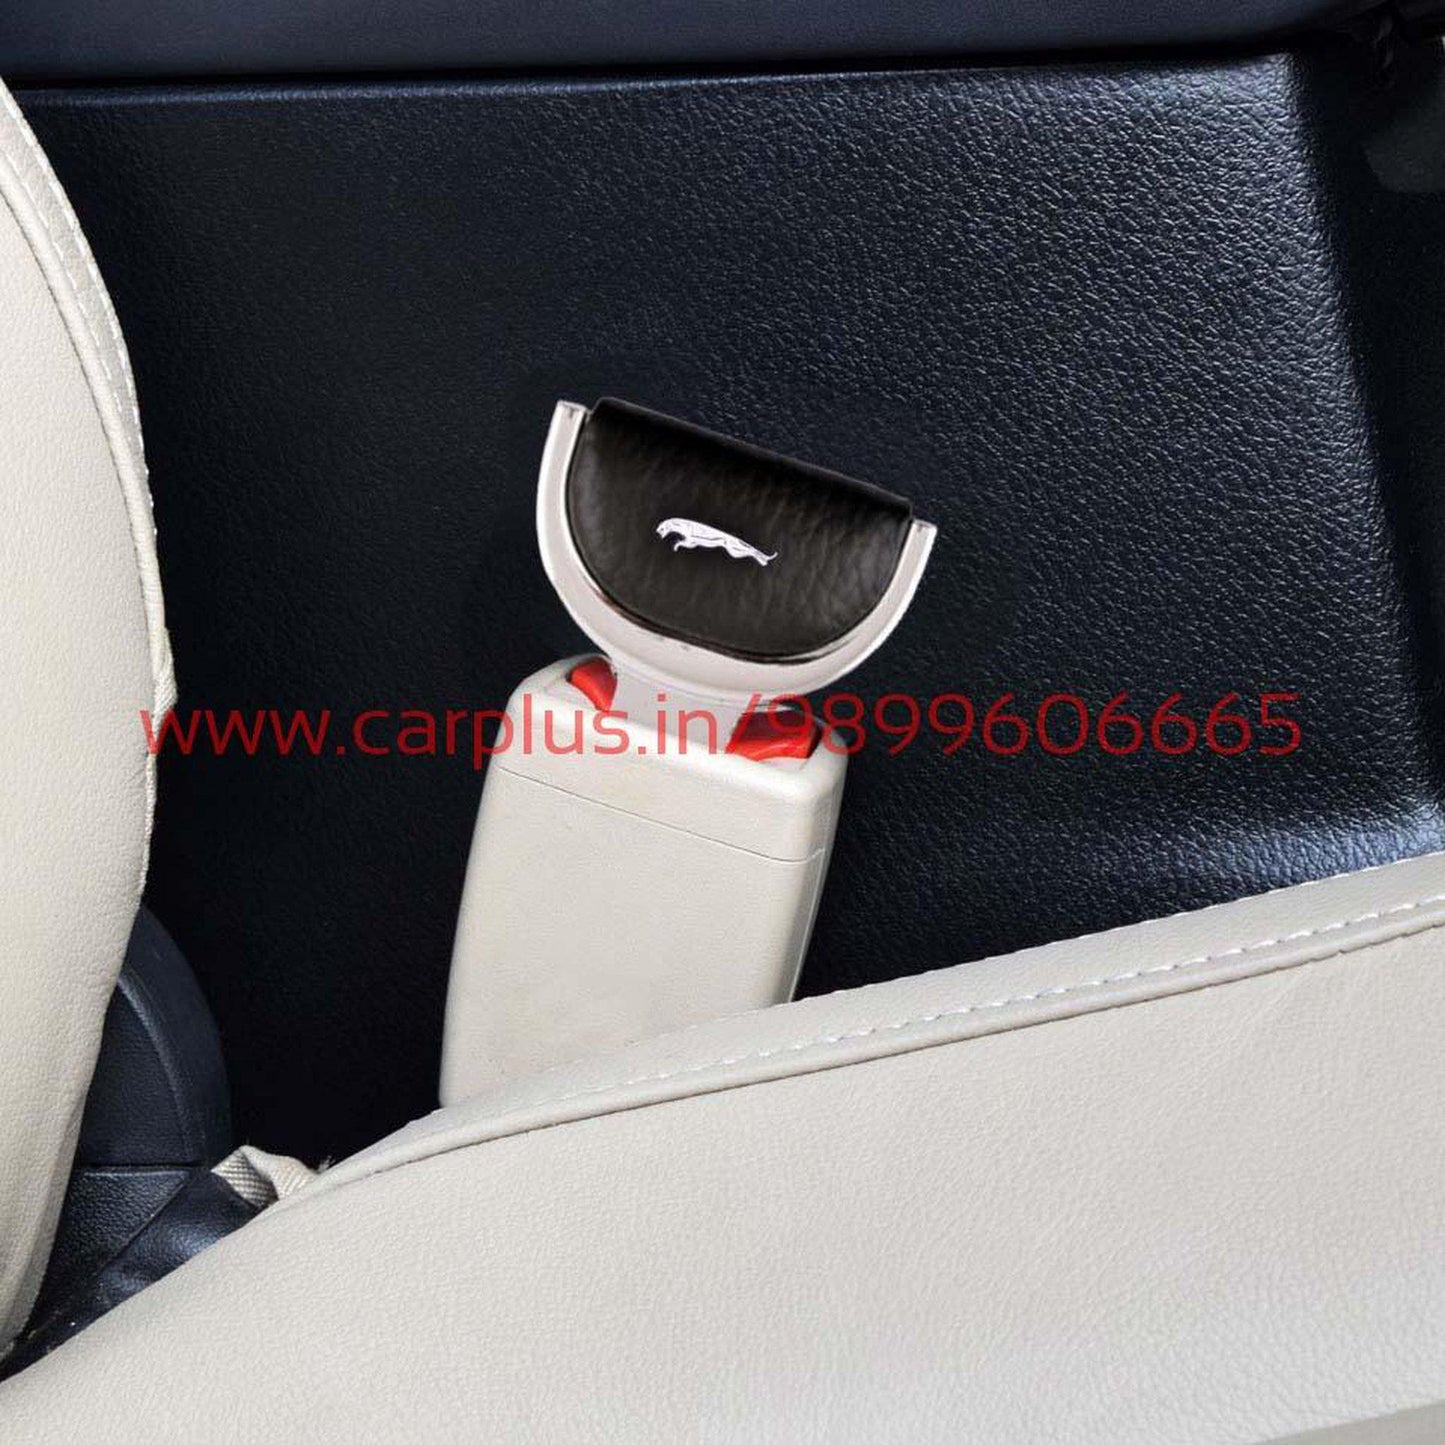 
                  
                    KMH Seat Belt Clip for Jaguar KMH-SEAT BELT CLIP SEAT BELT CLIP.
                  
                